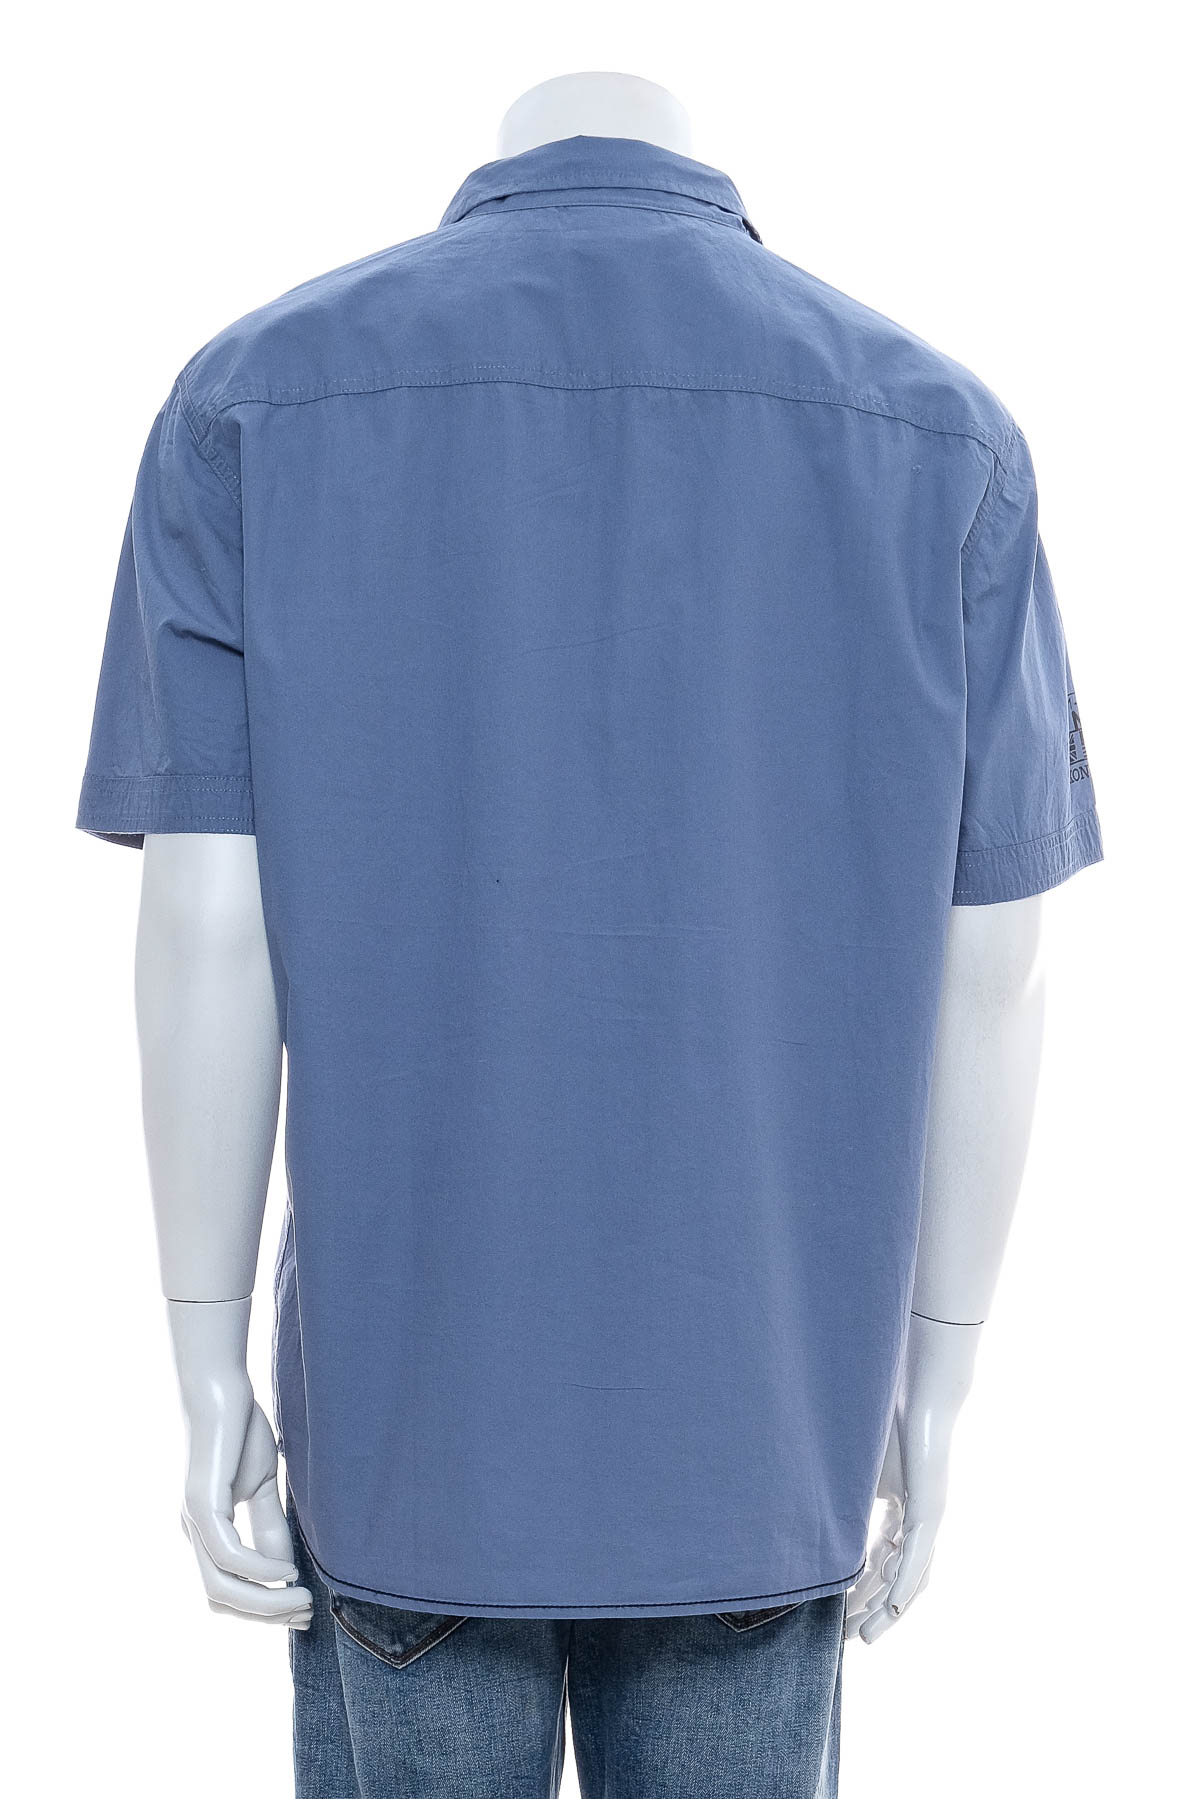 Ανδρικό πουκάμισο - Bpc selection bonprix collection - 1